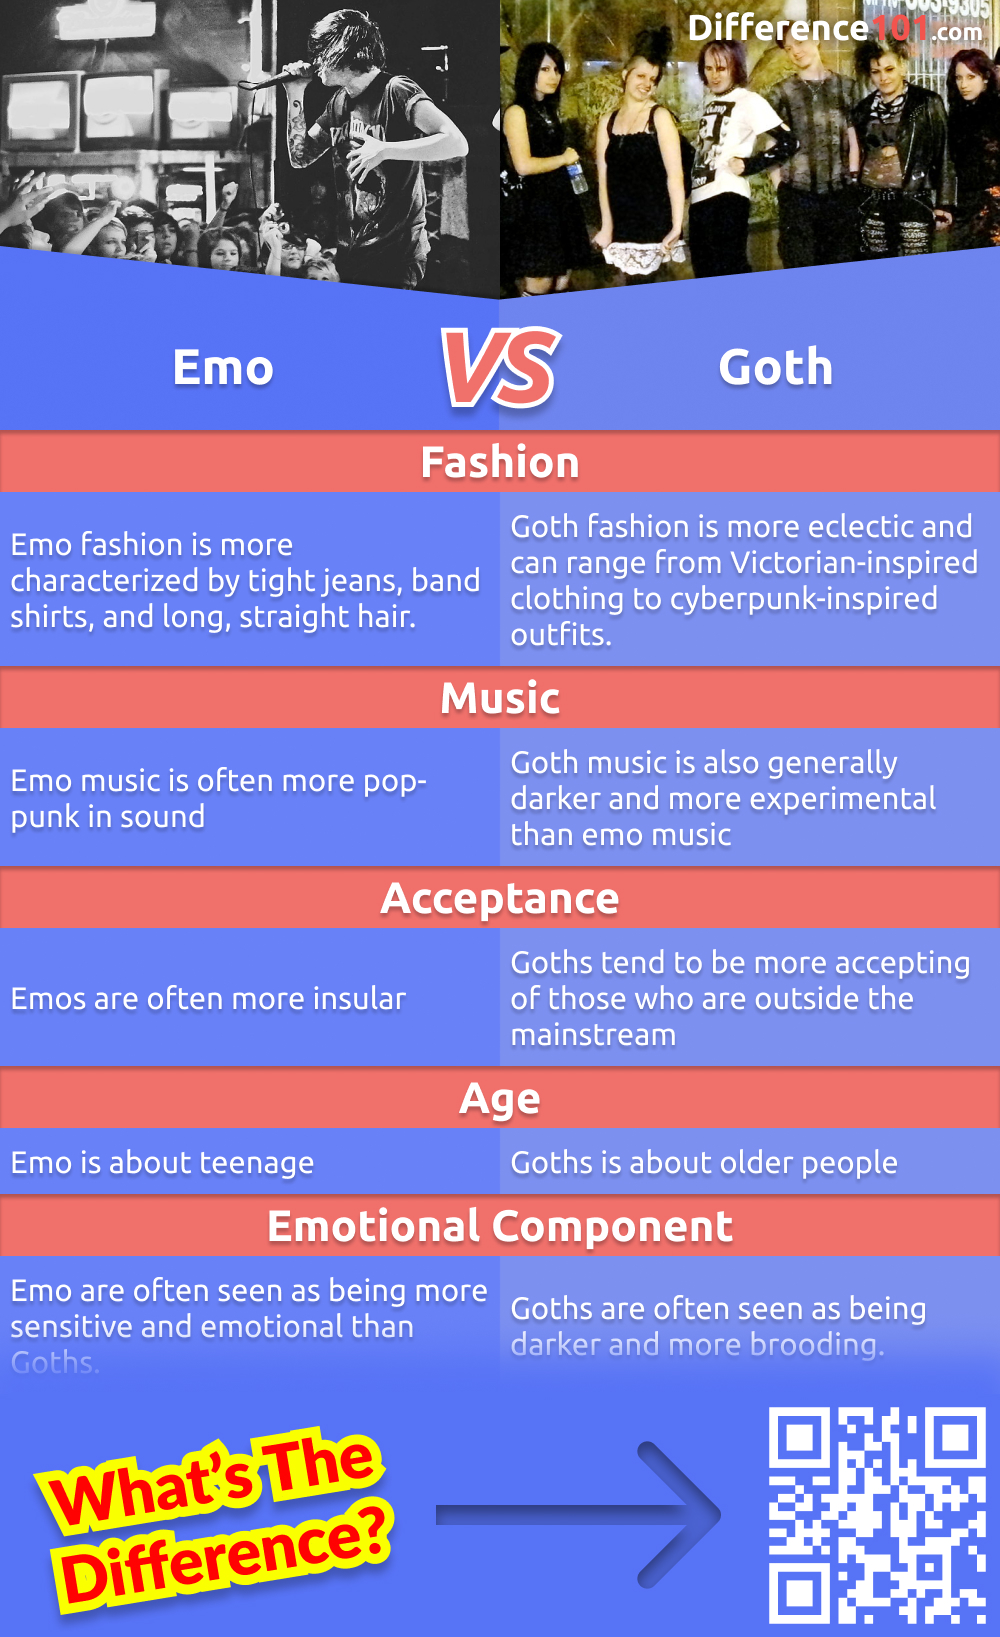 Les Emo et les Goths sont deux sous-cultures populaires qui sont souvent mises dans le même panier. Mais quelles sont les différences entre les deux ? Cet article explore les avantages et les inconvénients de chaque sous-culture et leurs principales différences.